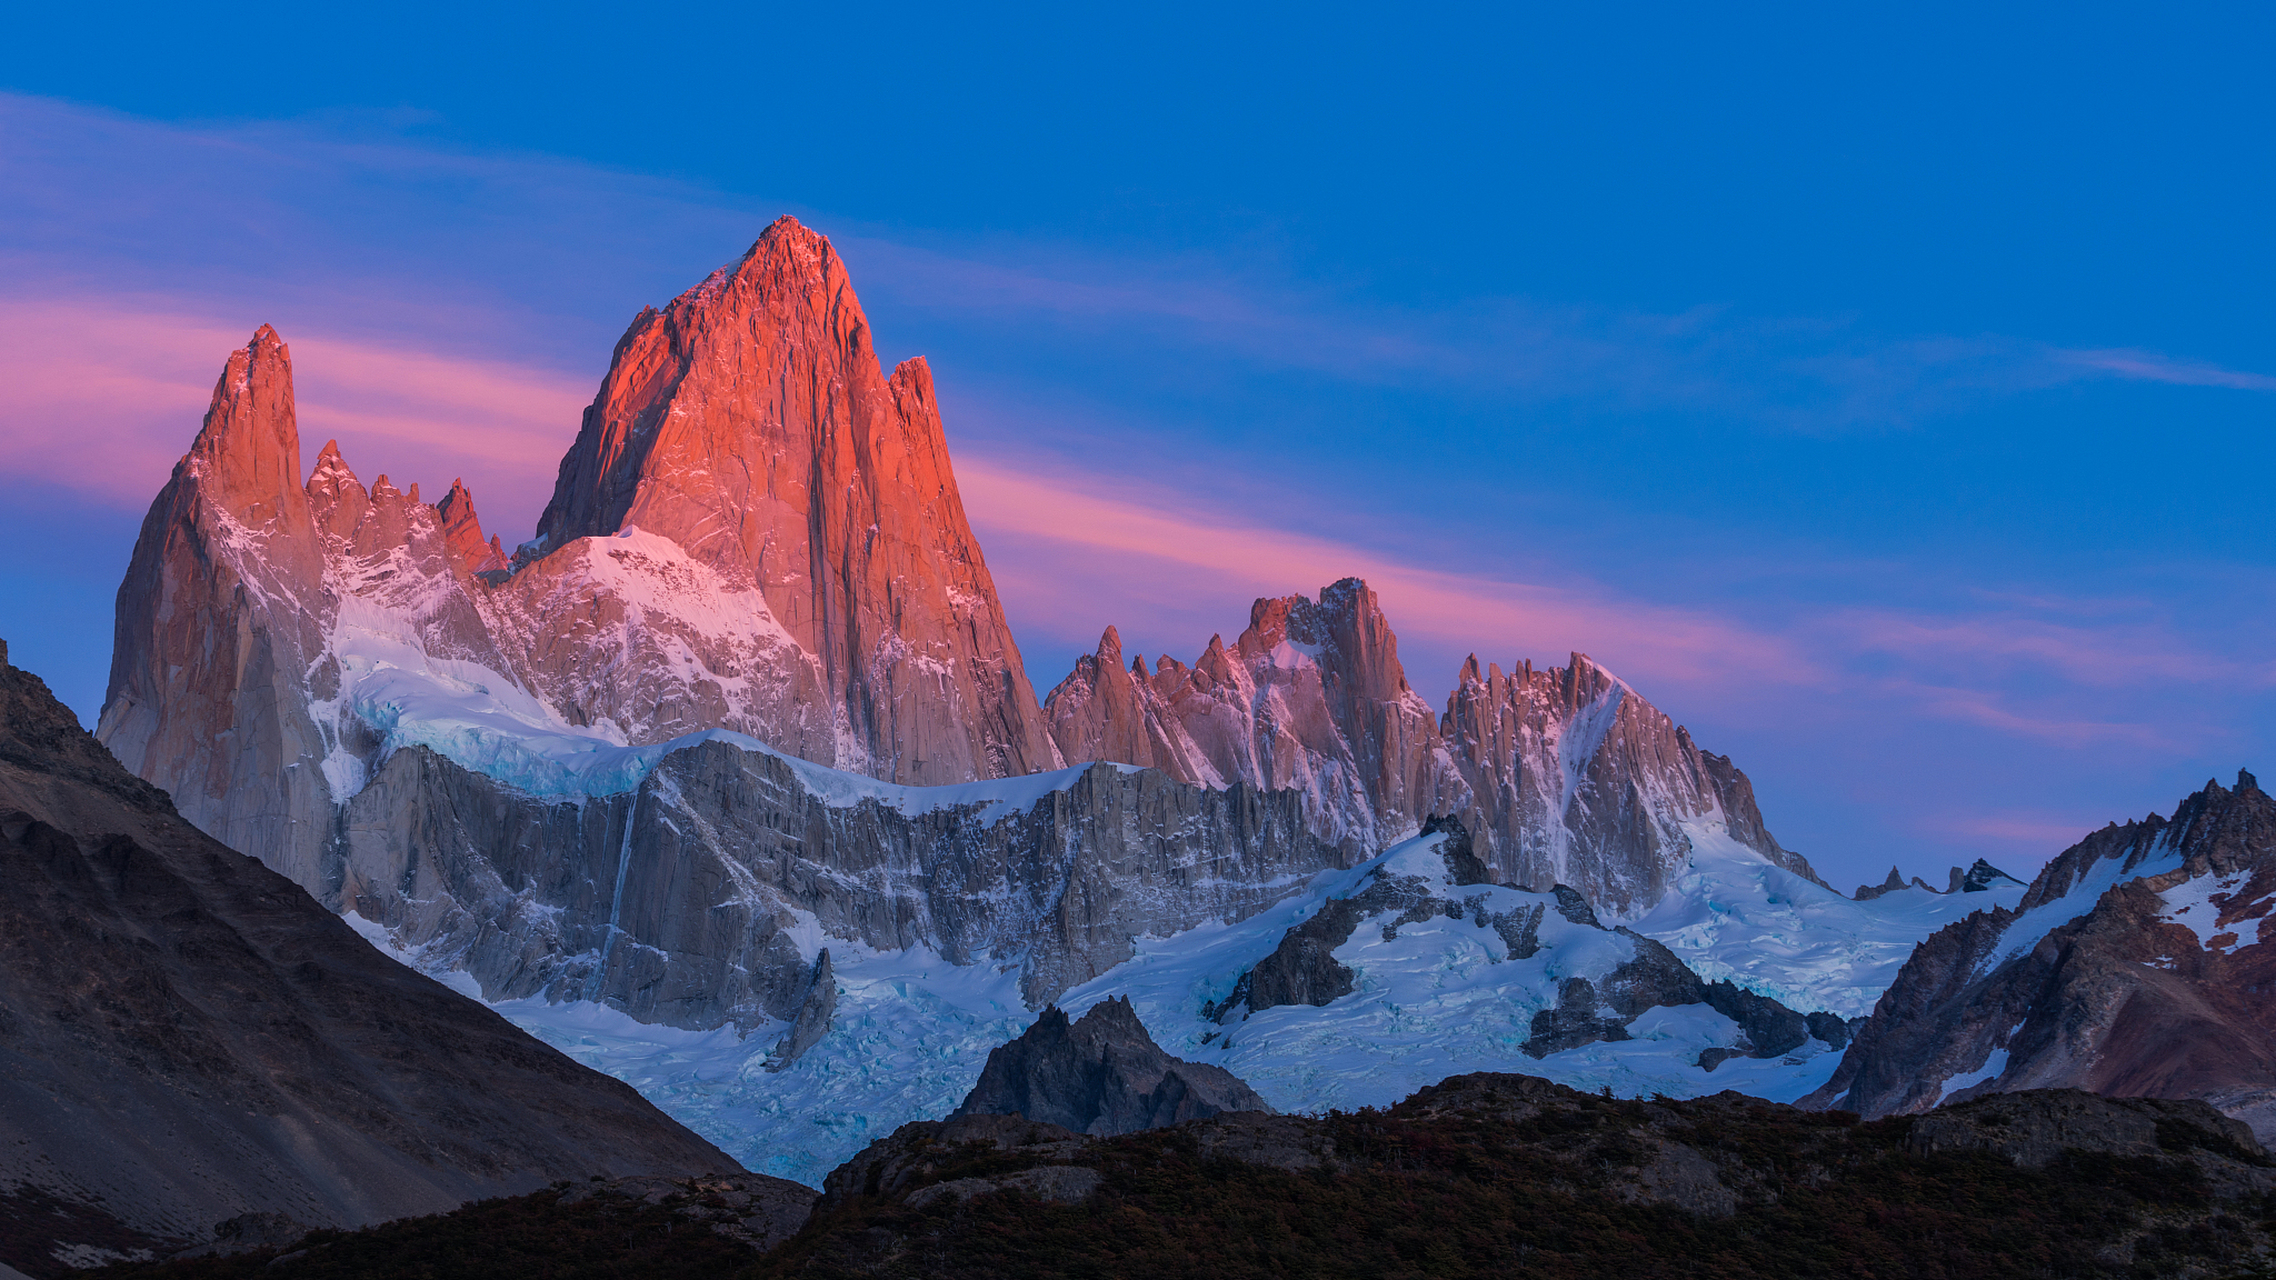 珠穆朗玛峰是世界上最高的山峰,位于喜马拉雅山脉的中心,是中国和